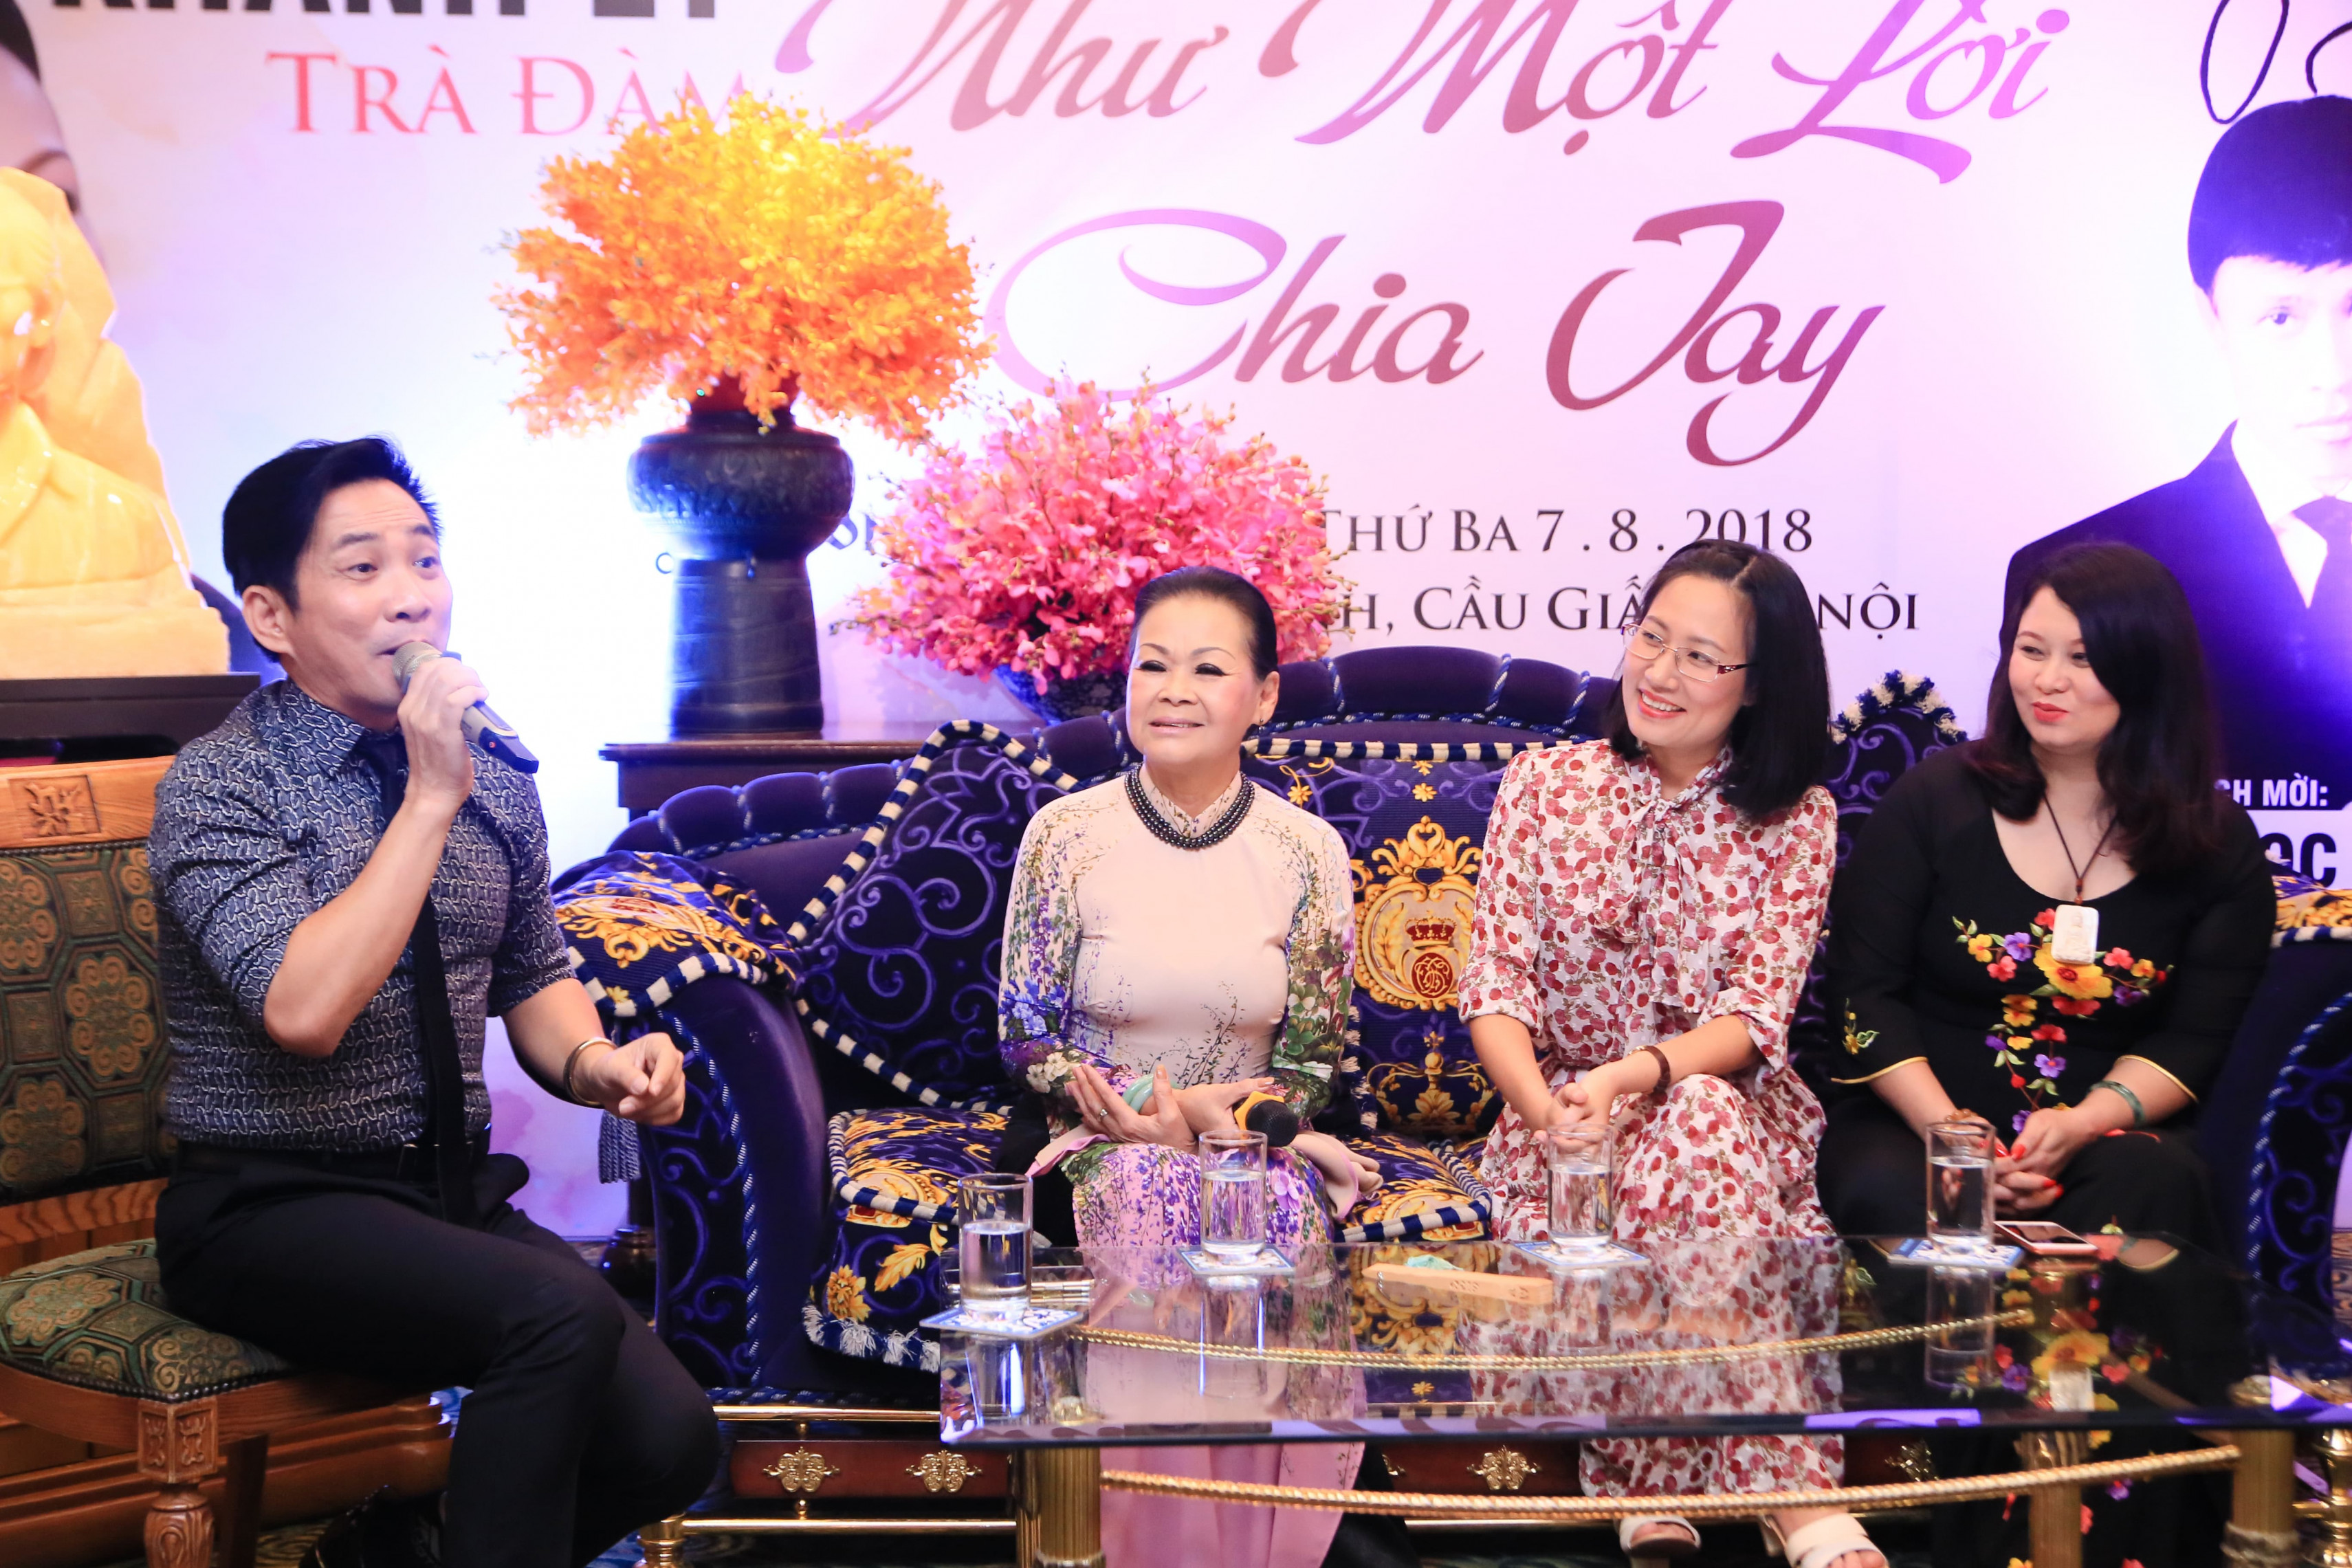 Tối 7/8, danh ca Khánh Ly đã có buổi trà đàm với báo chí và nghệ sĩ nhân dịp đêm nhạc Trịnh Công Sơn – Khánh Ly “Như một lời chia tay” sắp diễn ra tại Hà Nội.